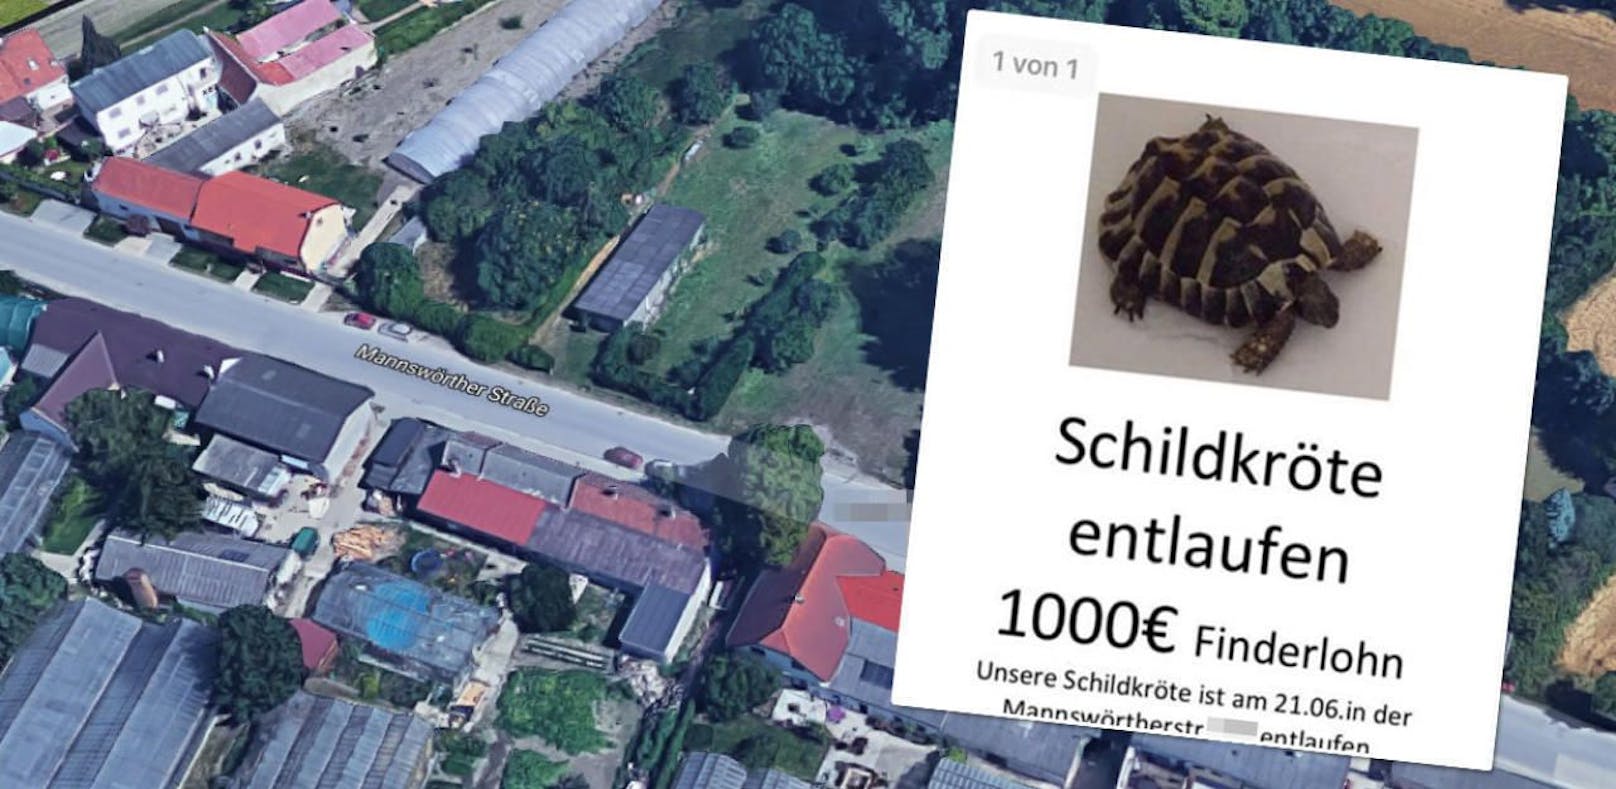 1.000 Euro Finderlohn für entlaufene Schildkröte